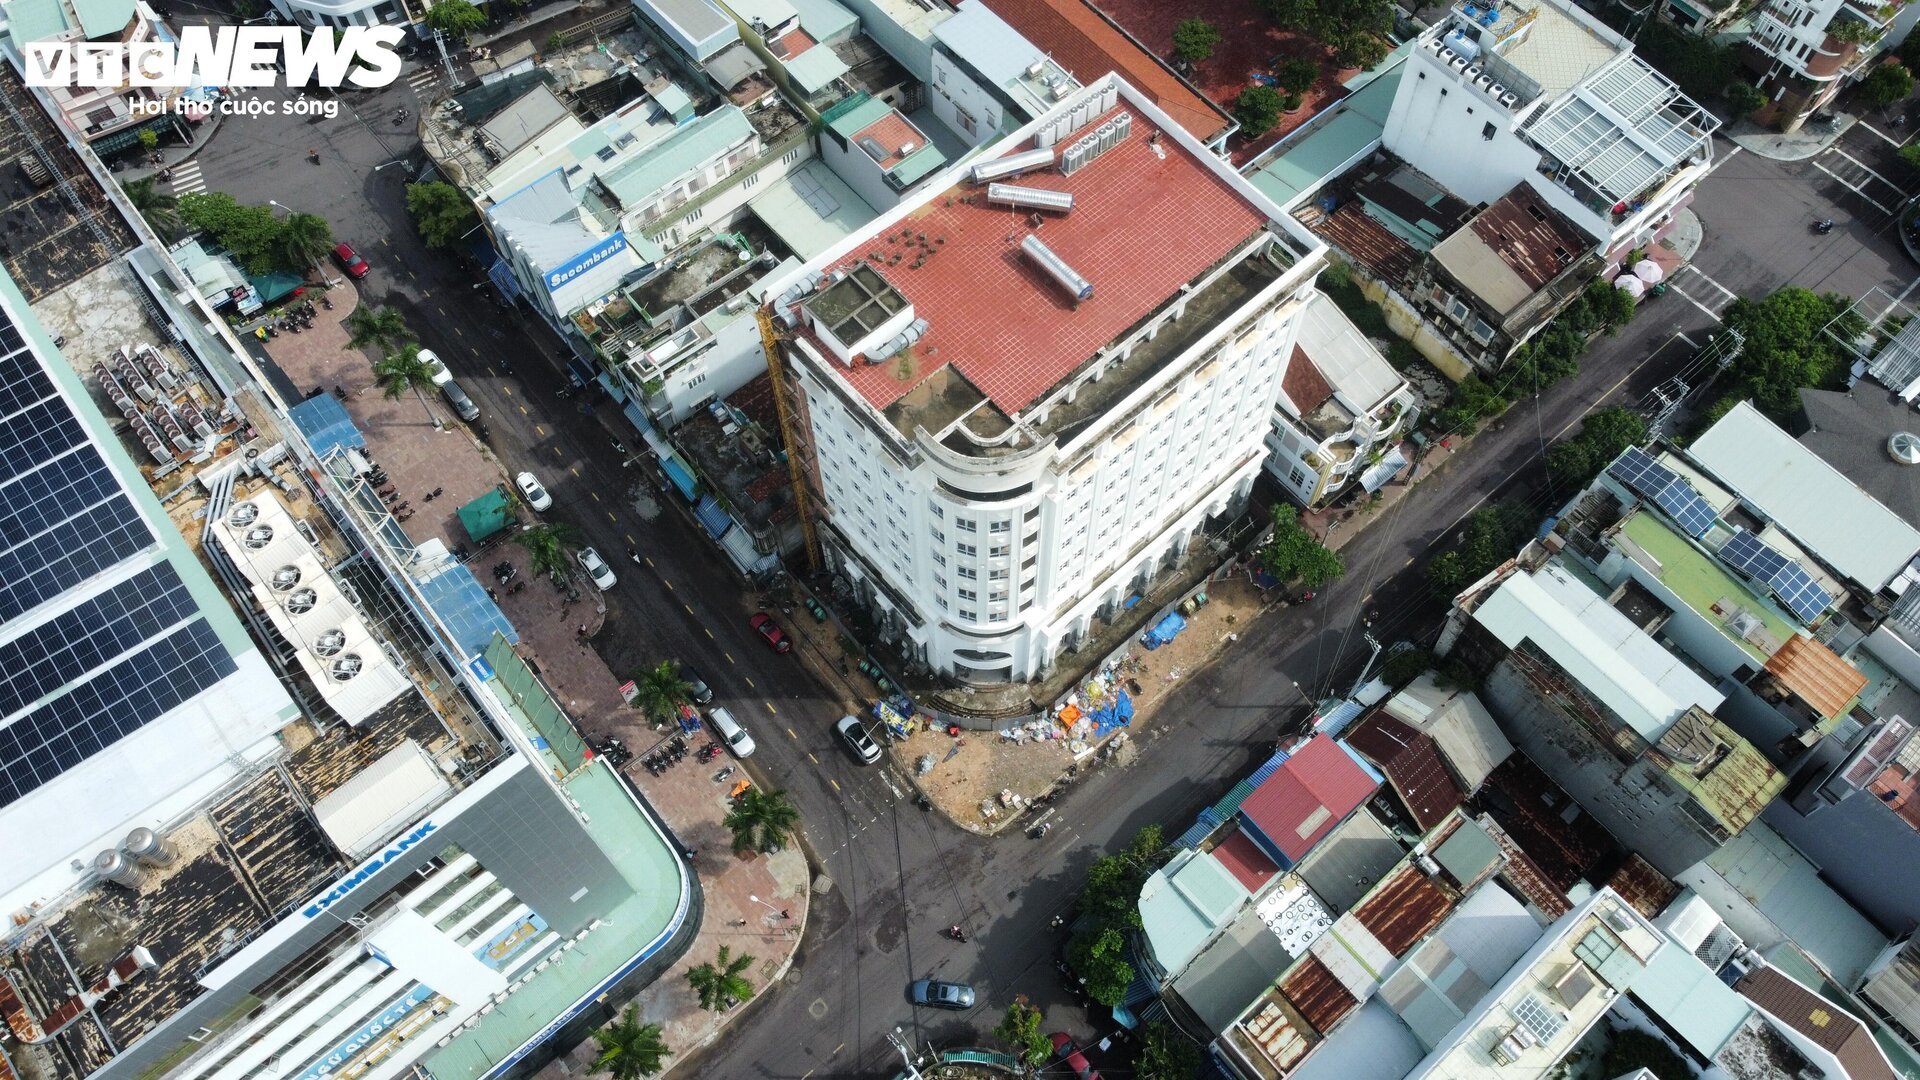 Tòa nhà trăm tỷ, xây gần 10 năm chưa xong của nữ giám đốc vừa bị bắt ở Bình Định - Ảnh 8.